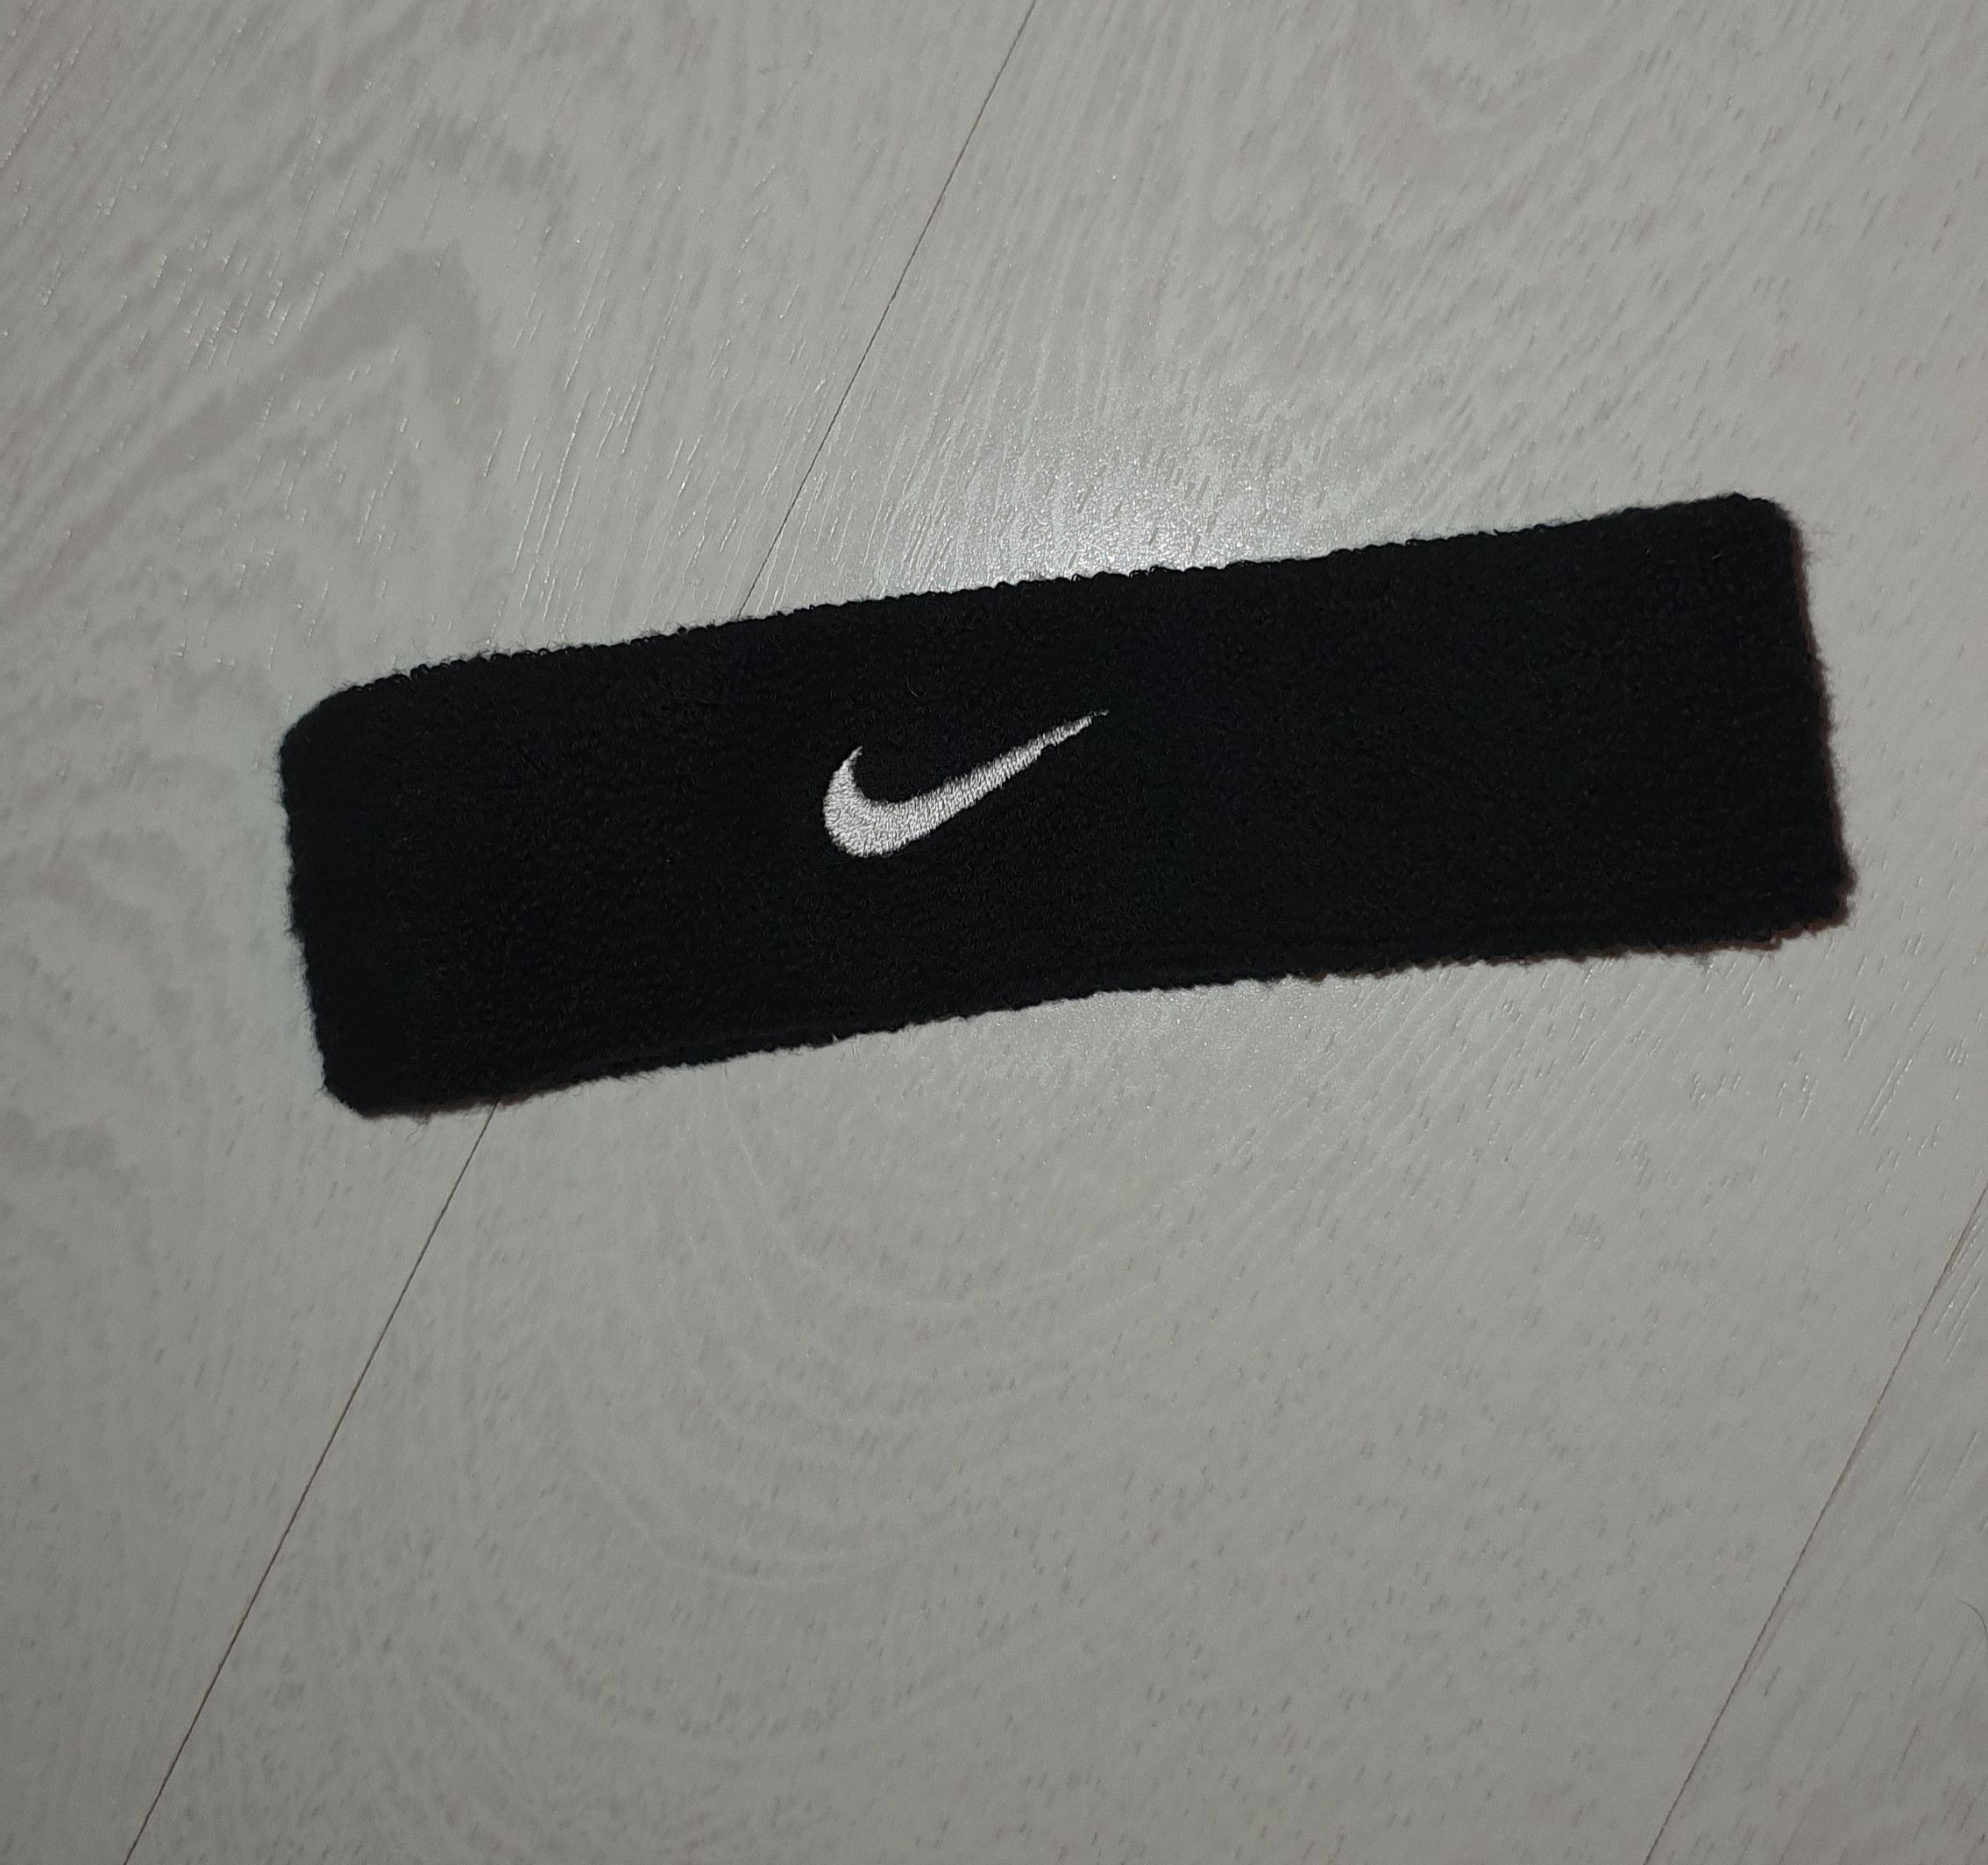 Nike Nike Head Bandage | Grailed